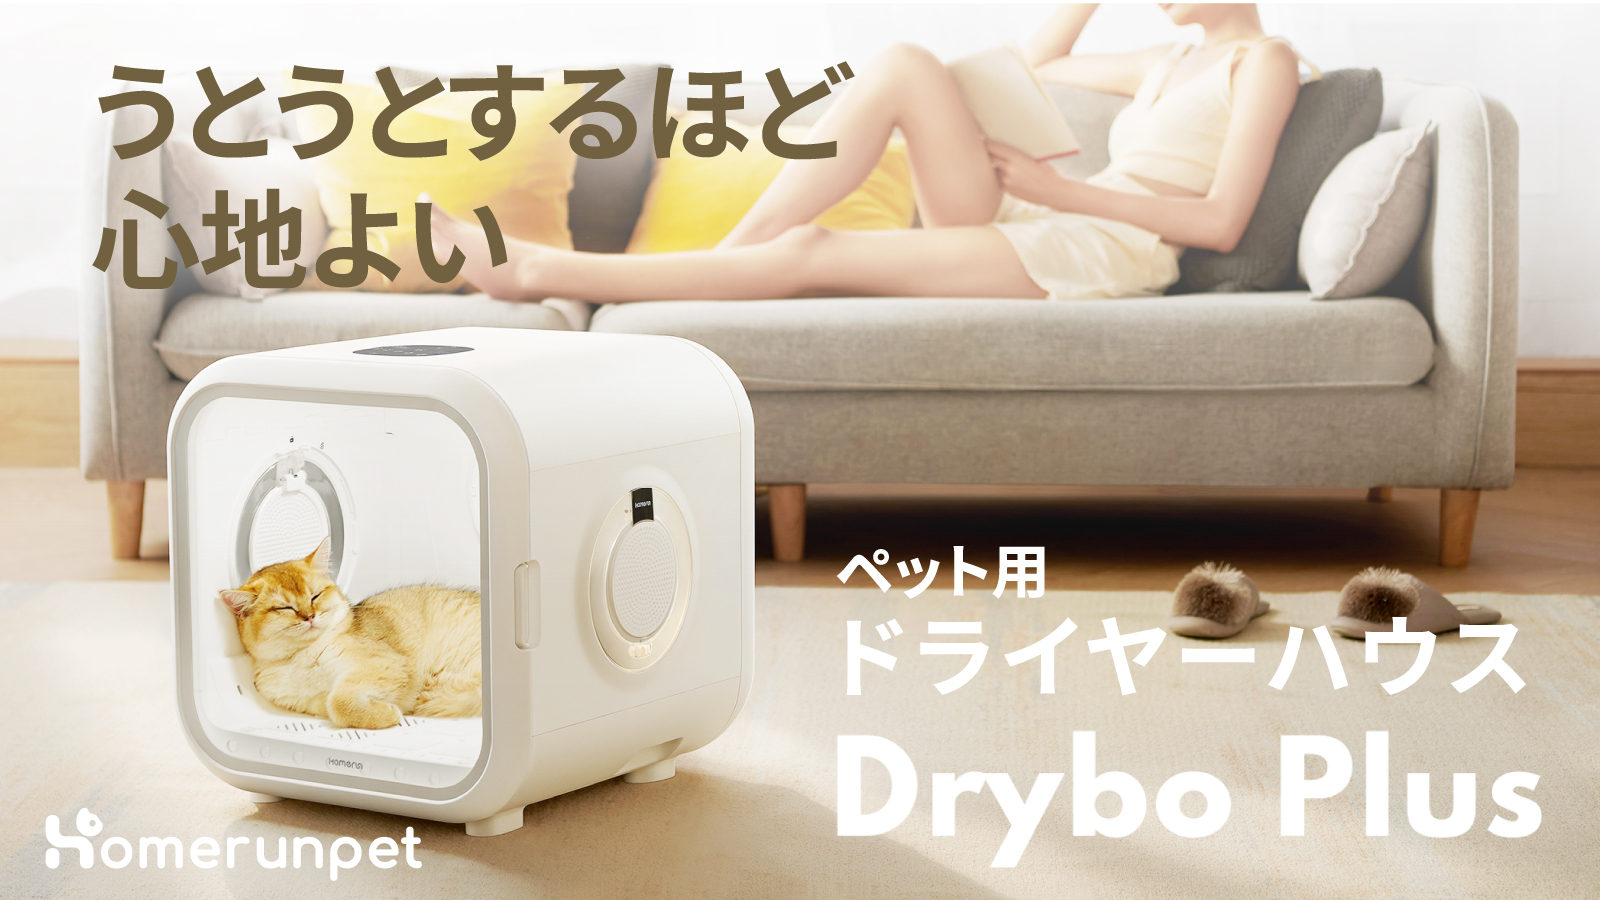 うとうとするほど心地よい、ペット用ドライヤーハウス「Drybo Plus ...